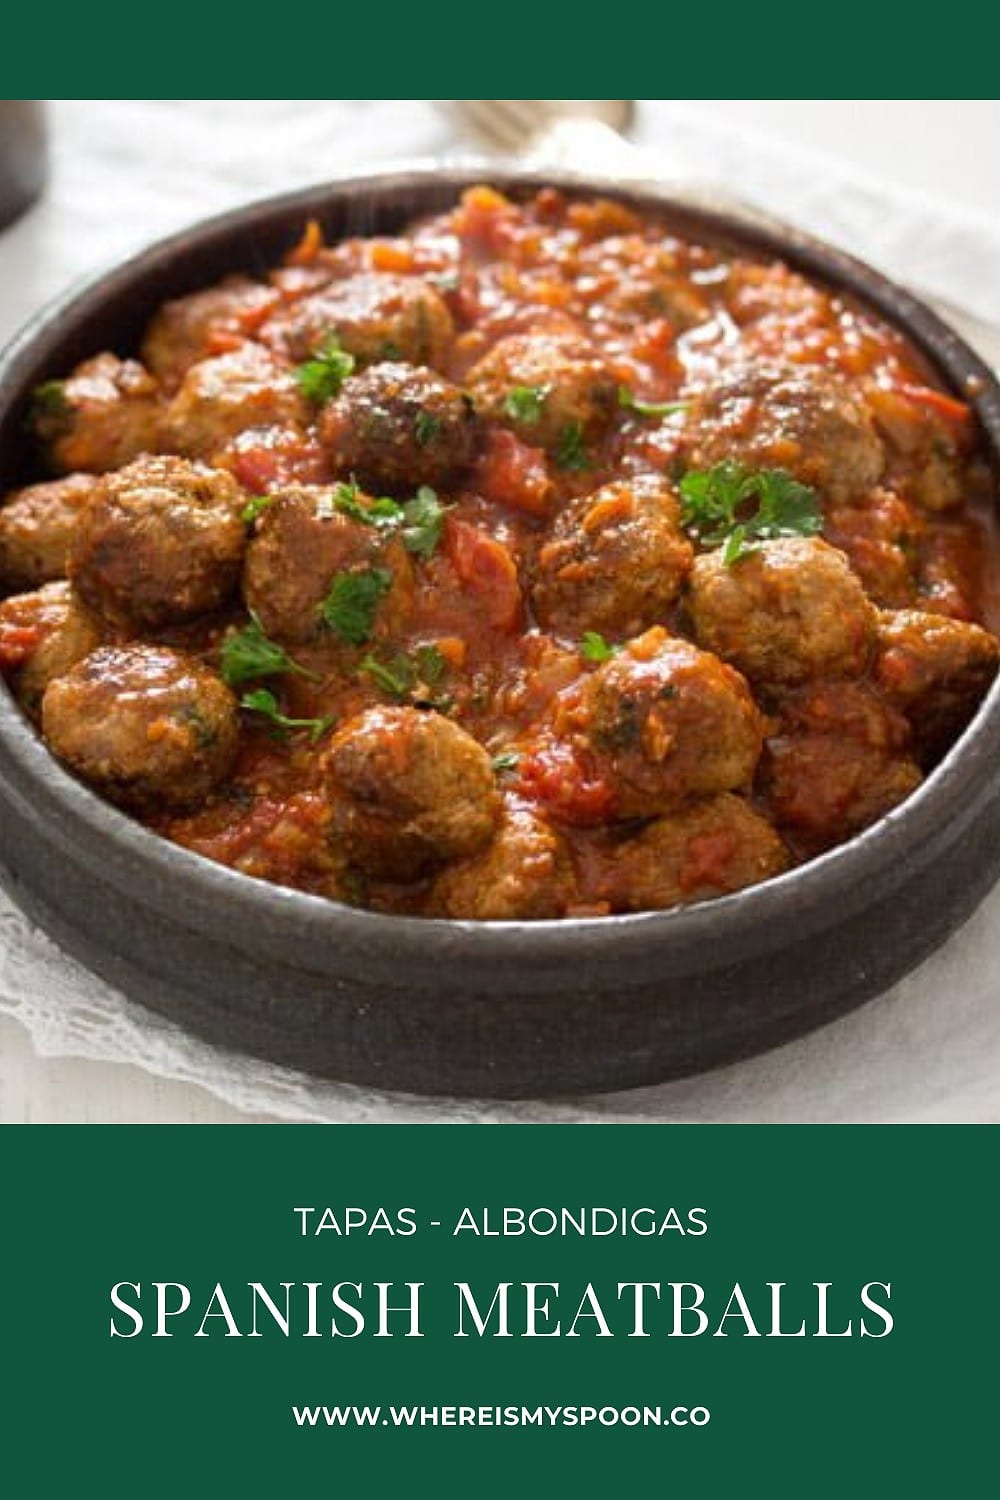 Spanish Meatballs – Best Albondigas Recipe (Tapas)